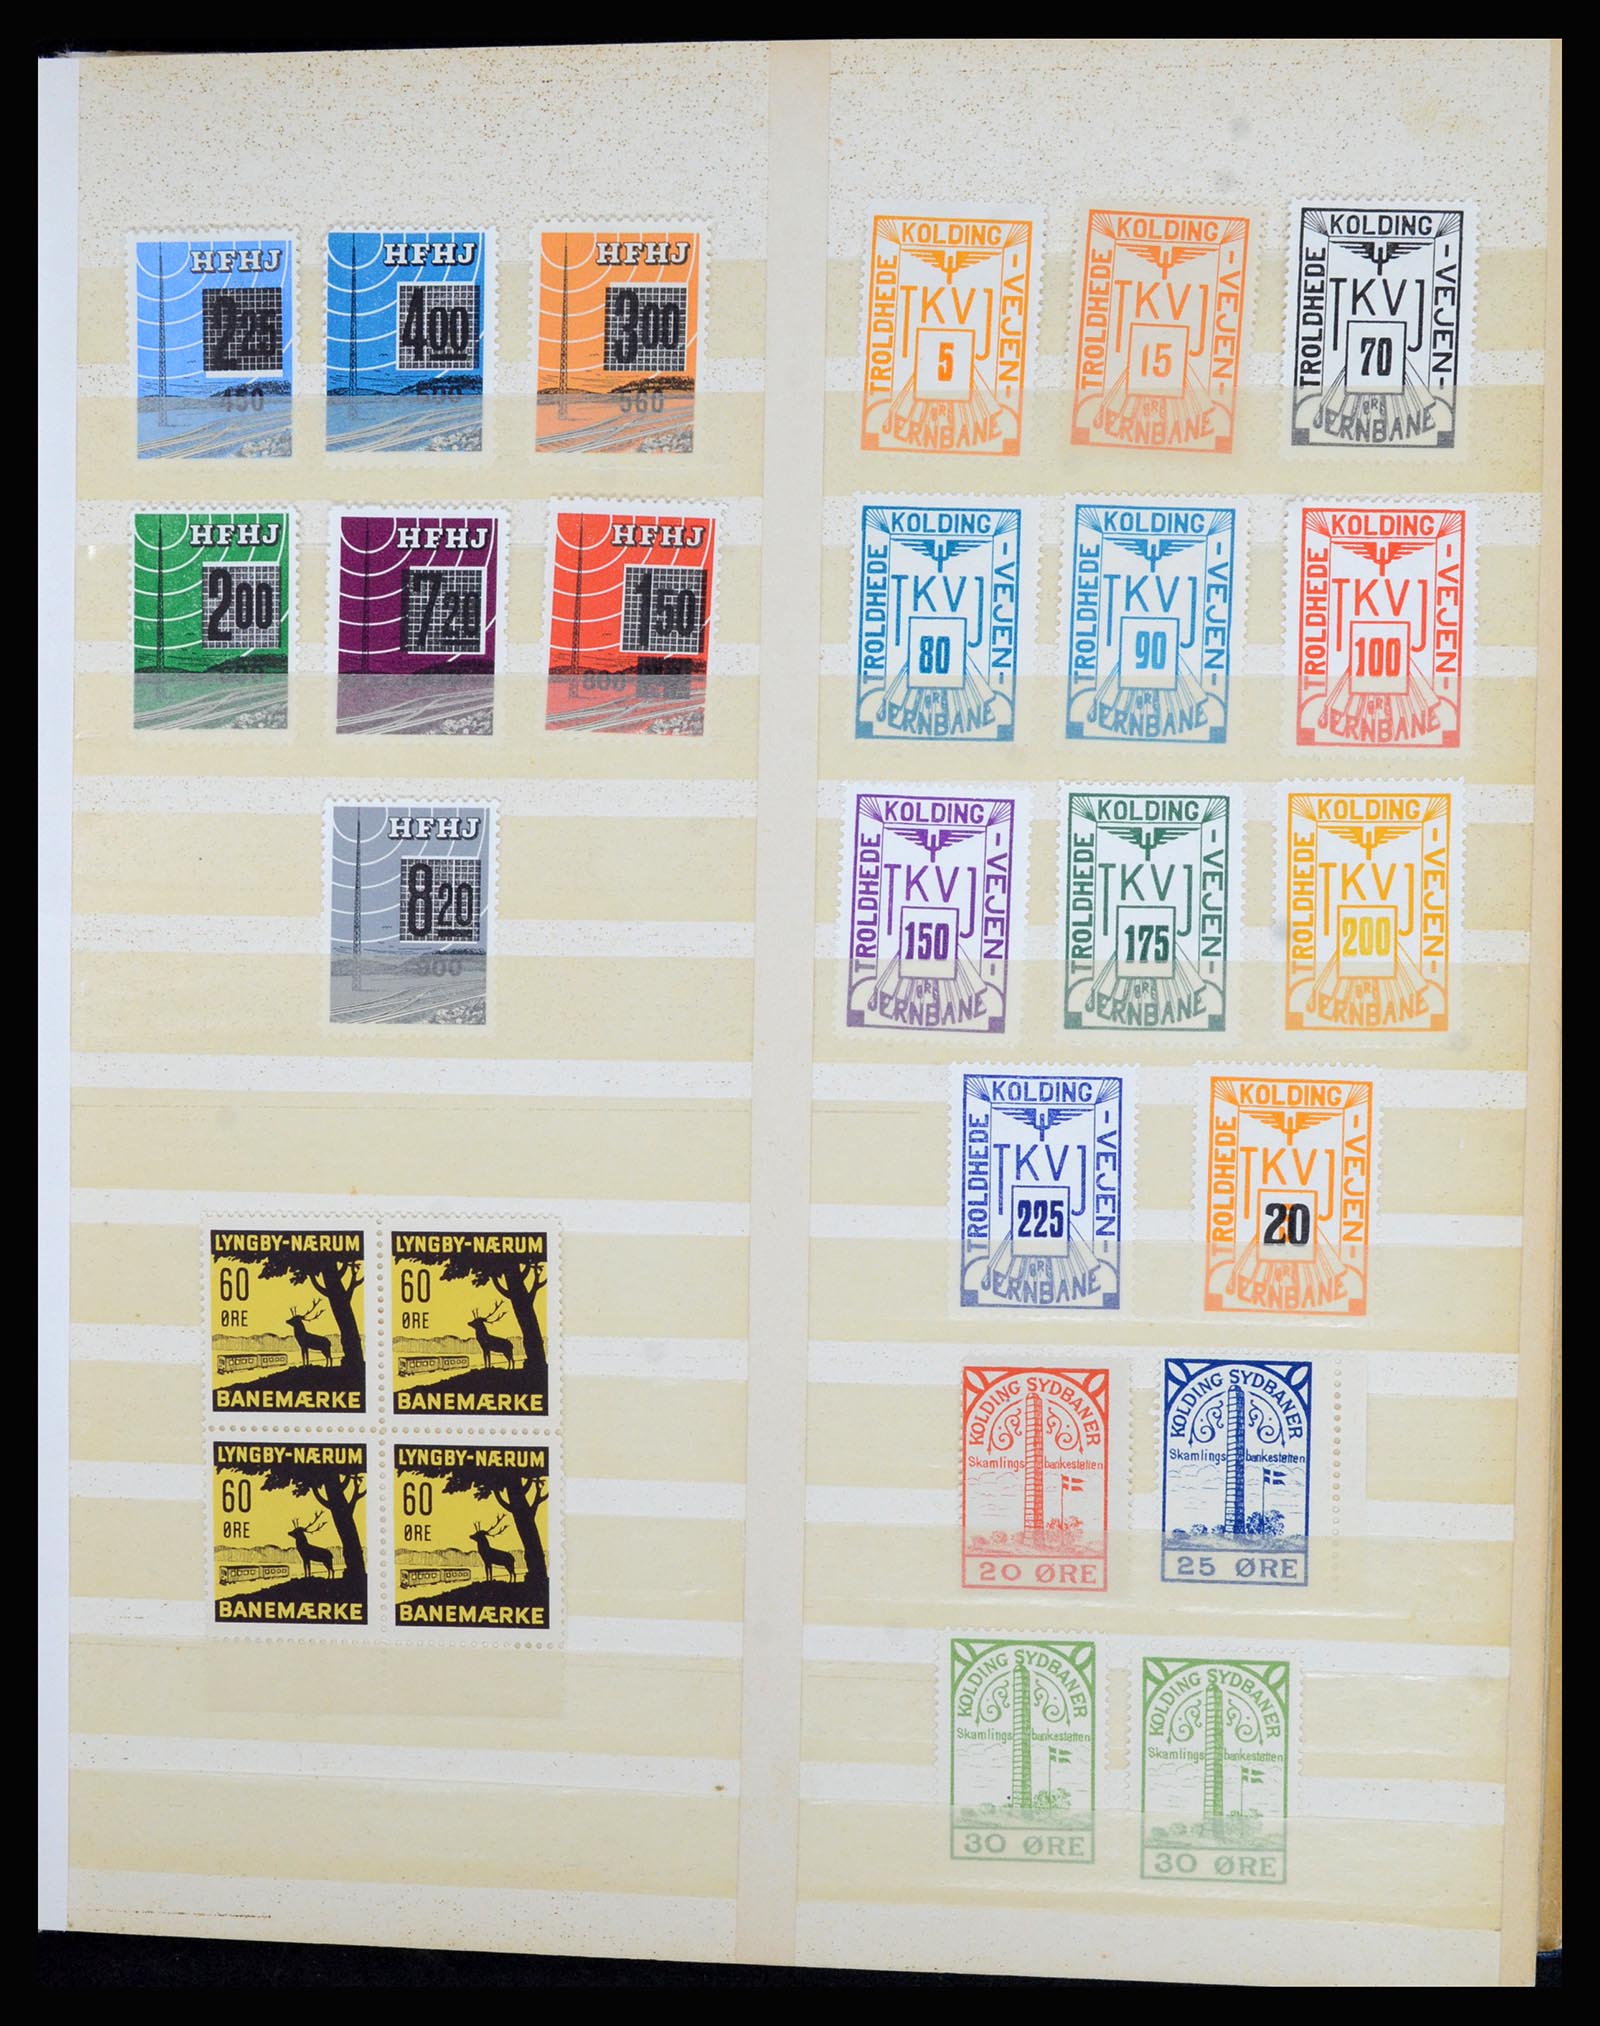 36767 011 - Postzegelverzameling 36767 Denemarken spoorwegzegels.